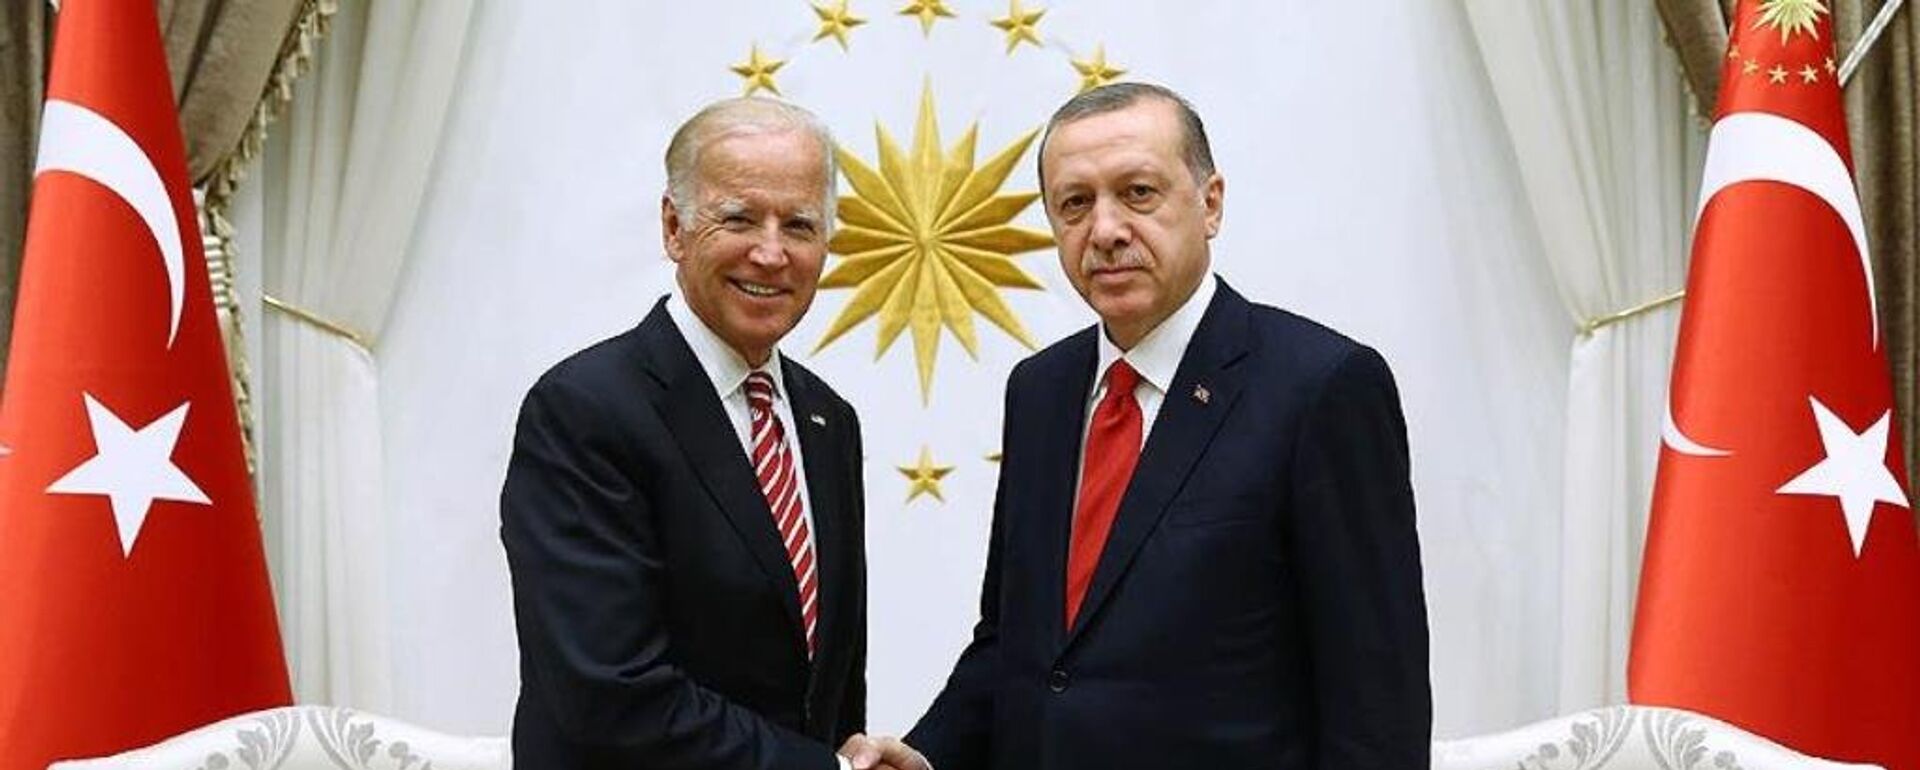 Joe Biden ve Recep Tayyip Erdoğan - Sputnik Türkiye, 1920, 03.02.2021